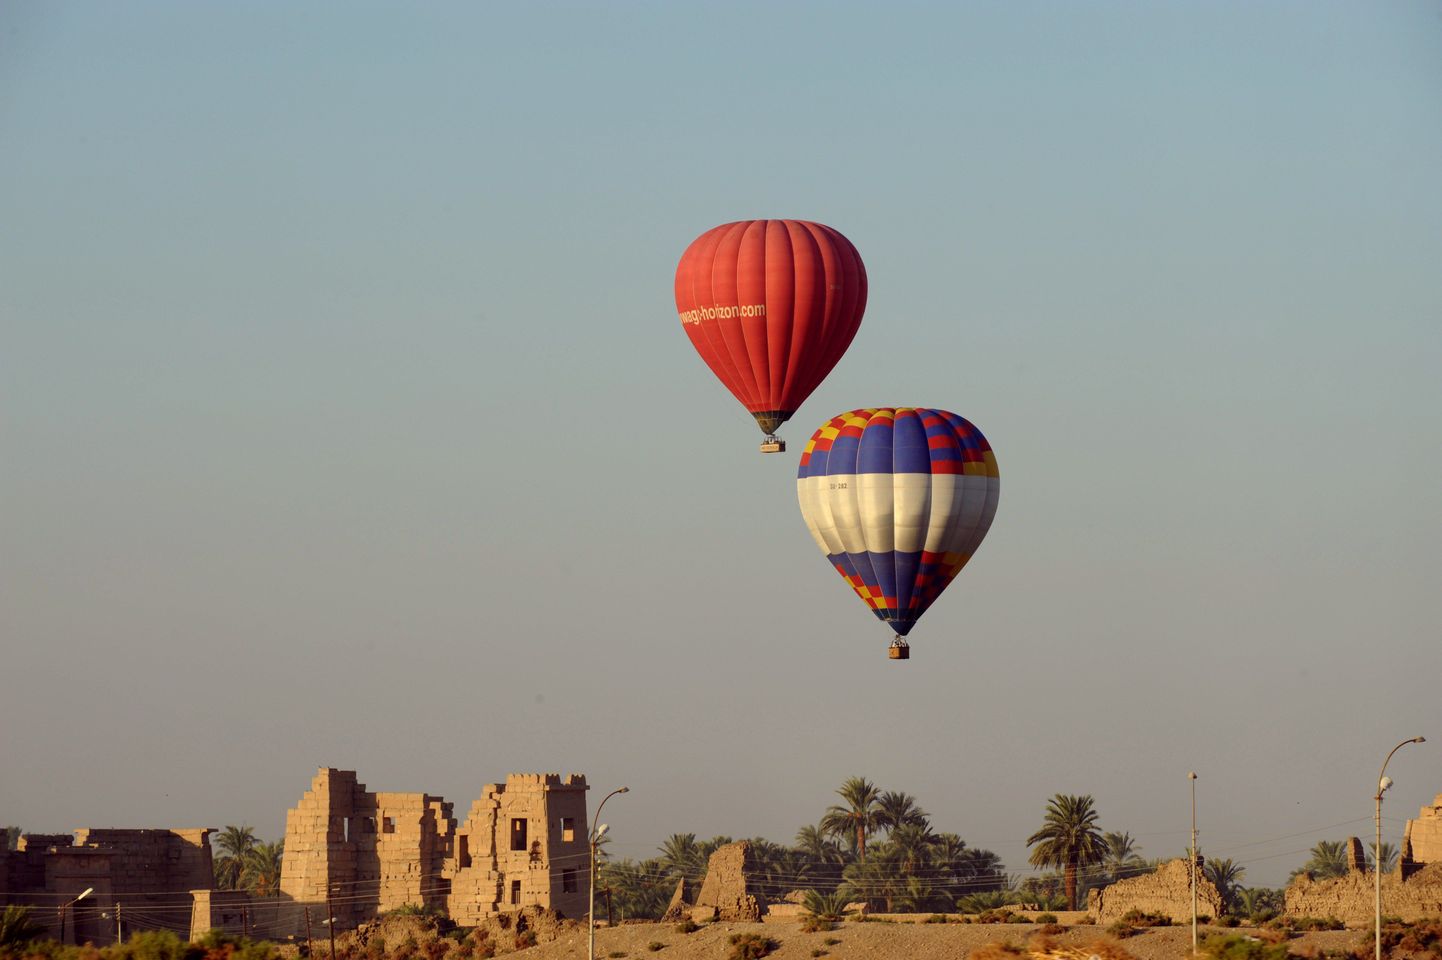 Kuumaõhupalliga lendamine on Luxoris väga populaarne.